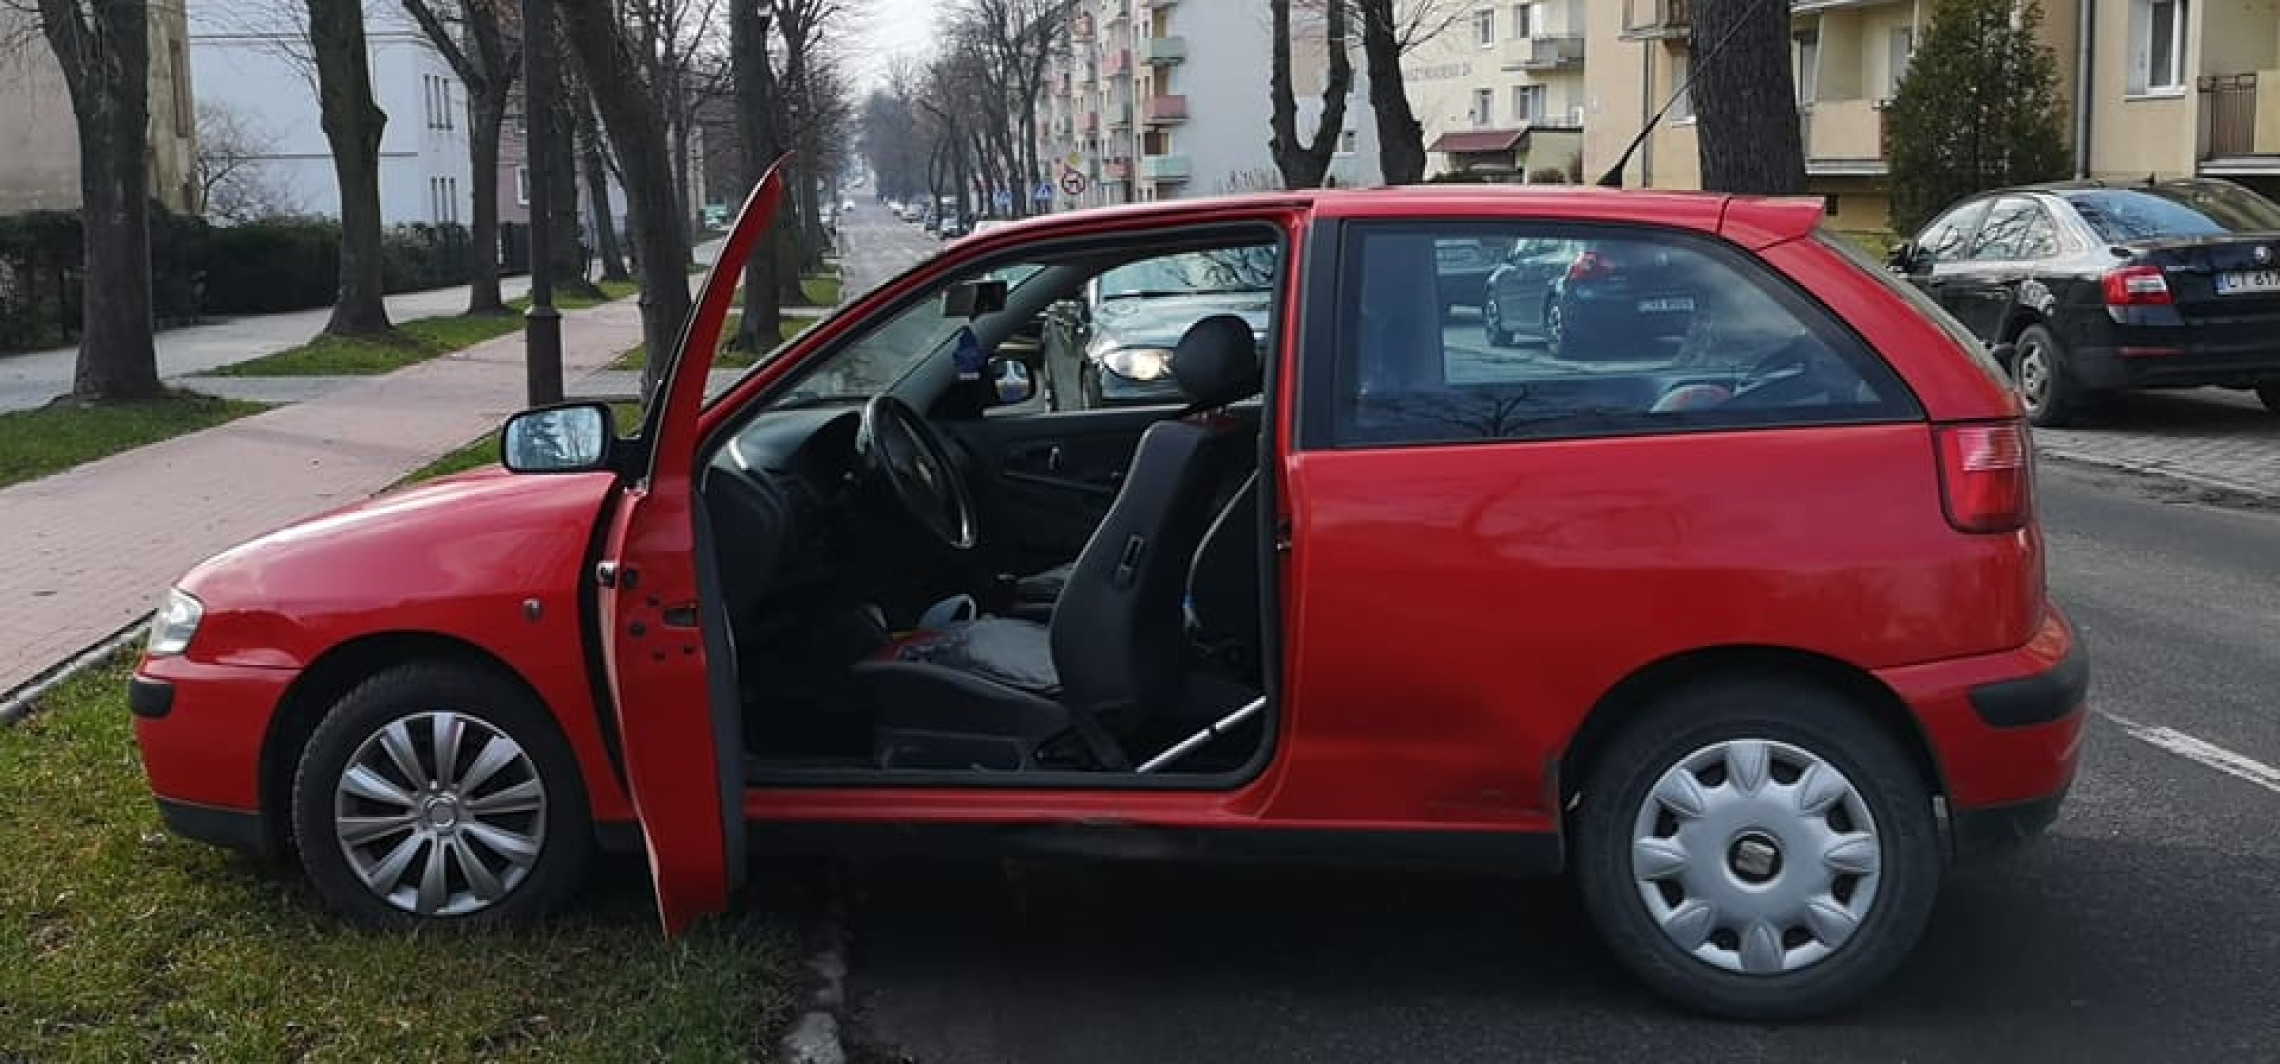 Inowrocław - Nie użyła ręcznego. Auto zaparkowało w poprzek drogi